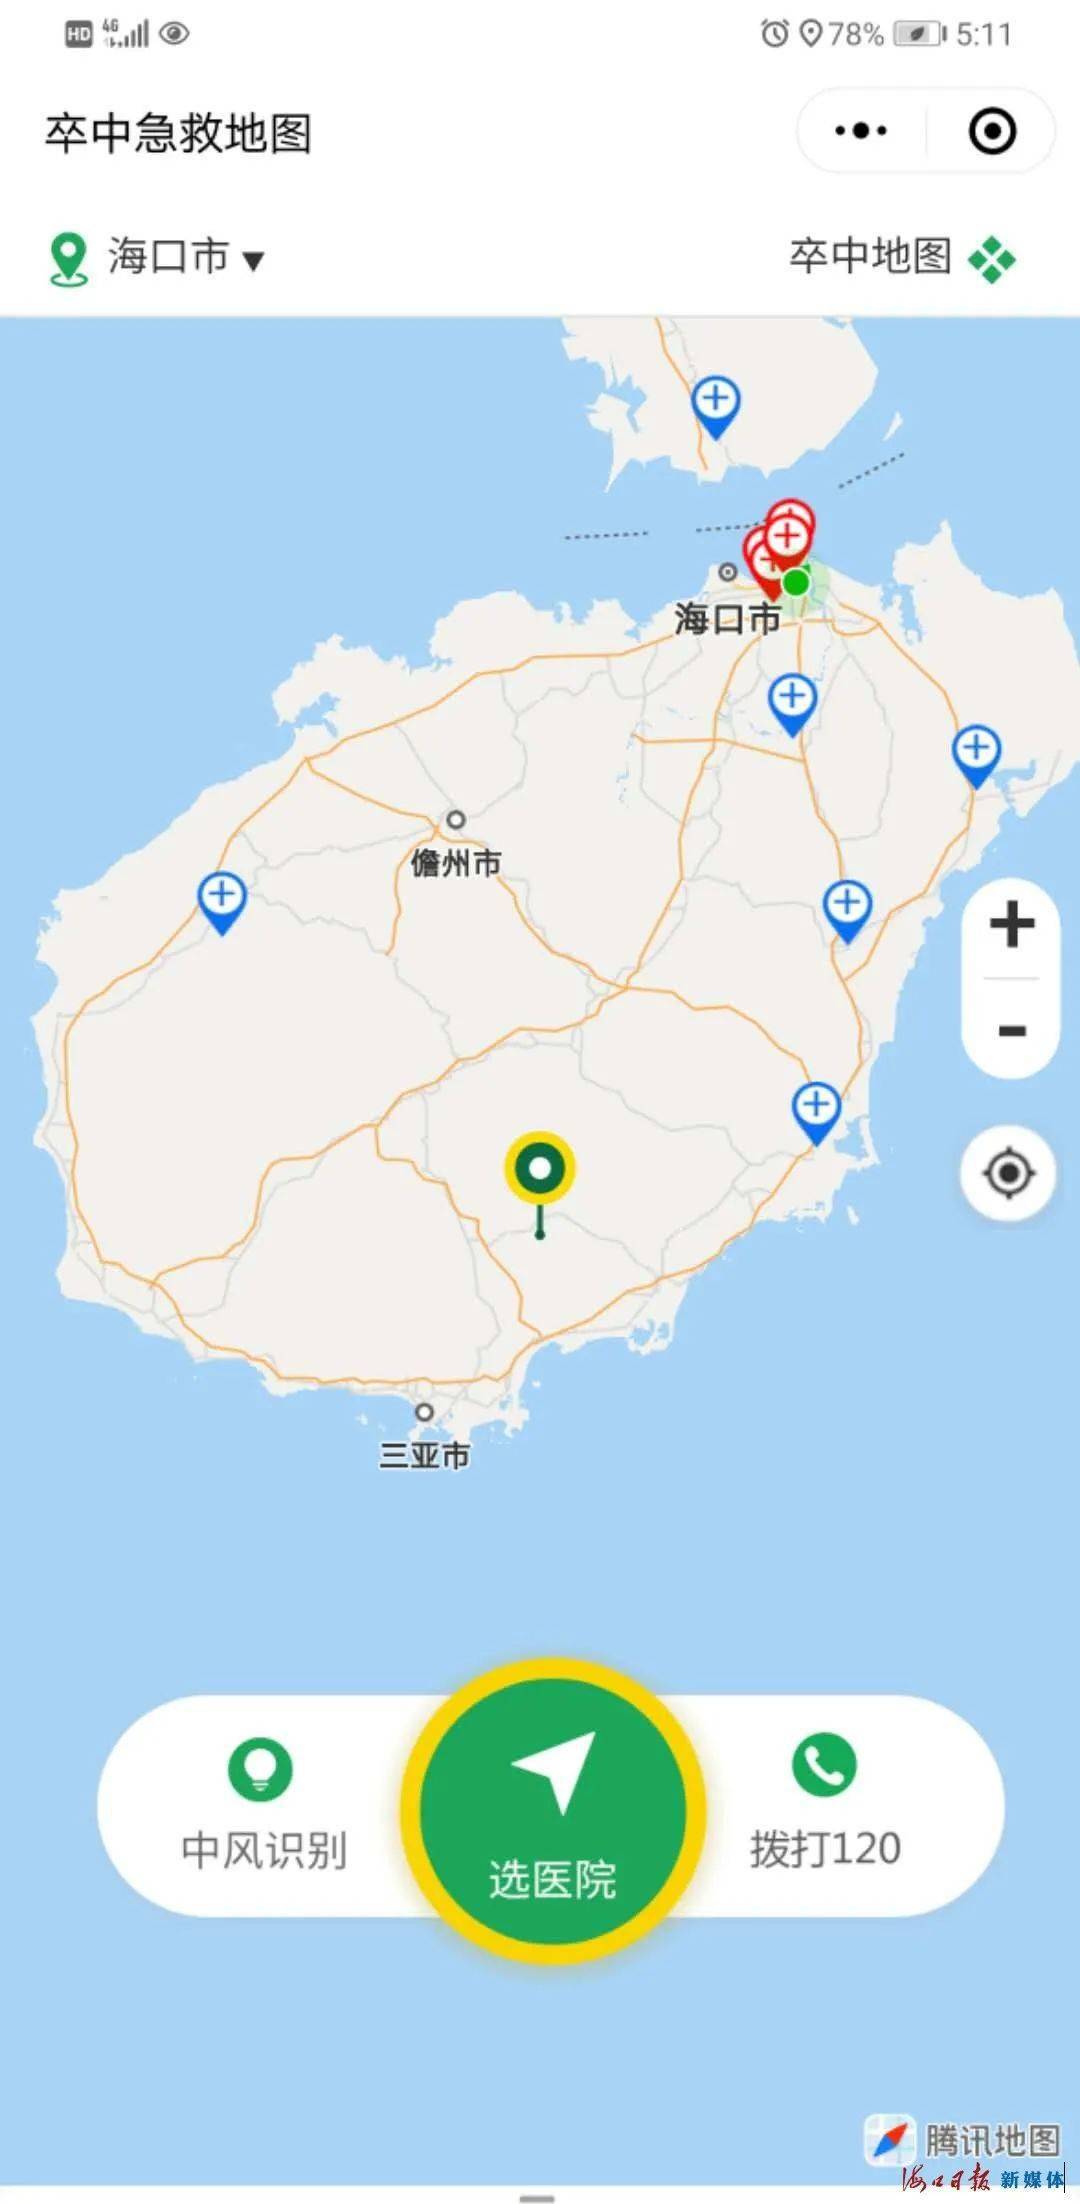 海南省卒中急救地图正式发布!首批入选医院名单速看